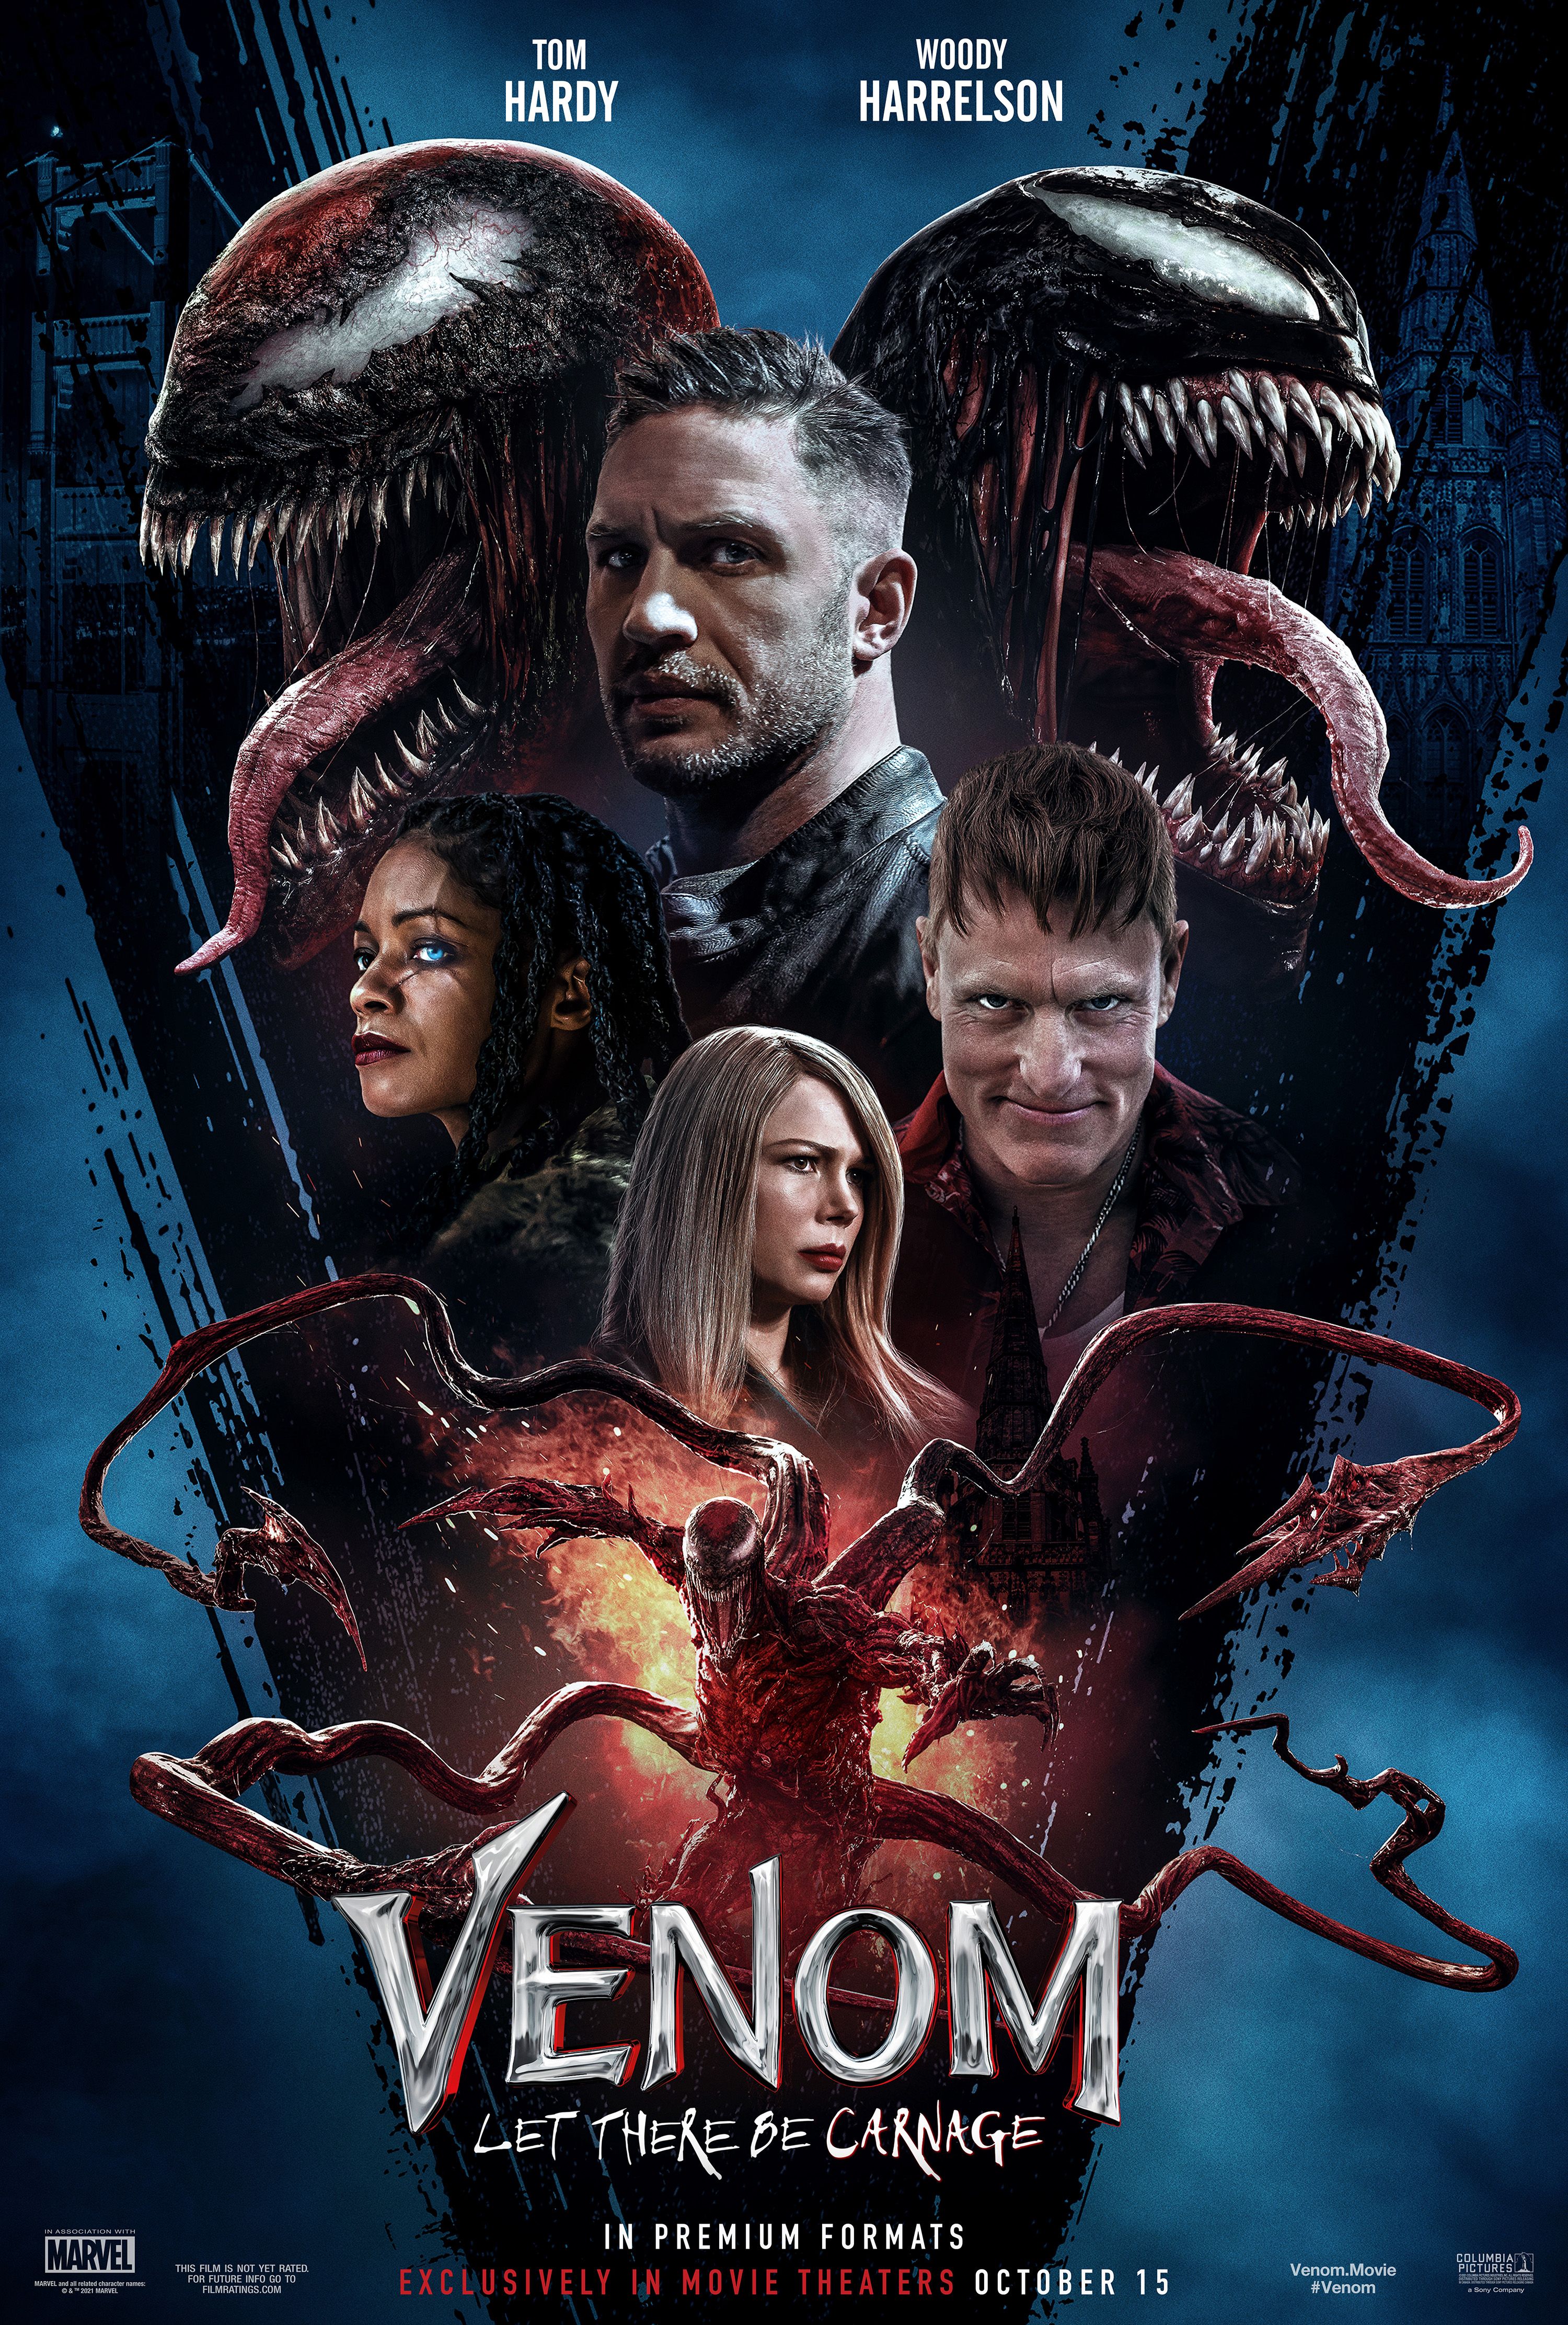 Venom:Let There Be Carnage Poster reafirma data de lançamento em outubro 2